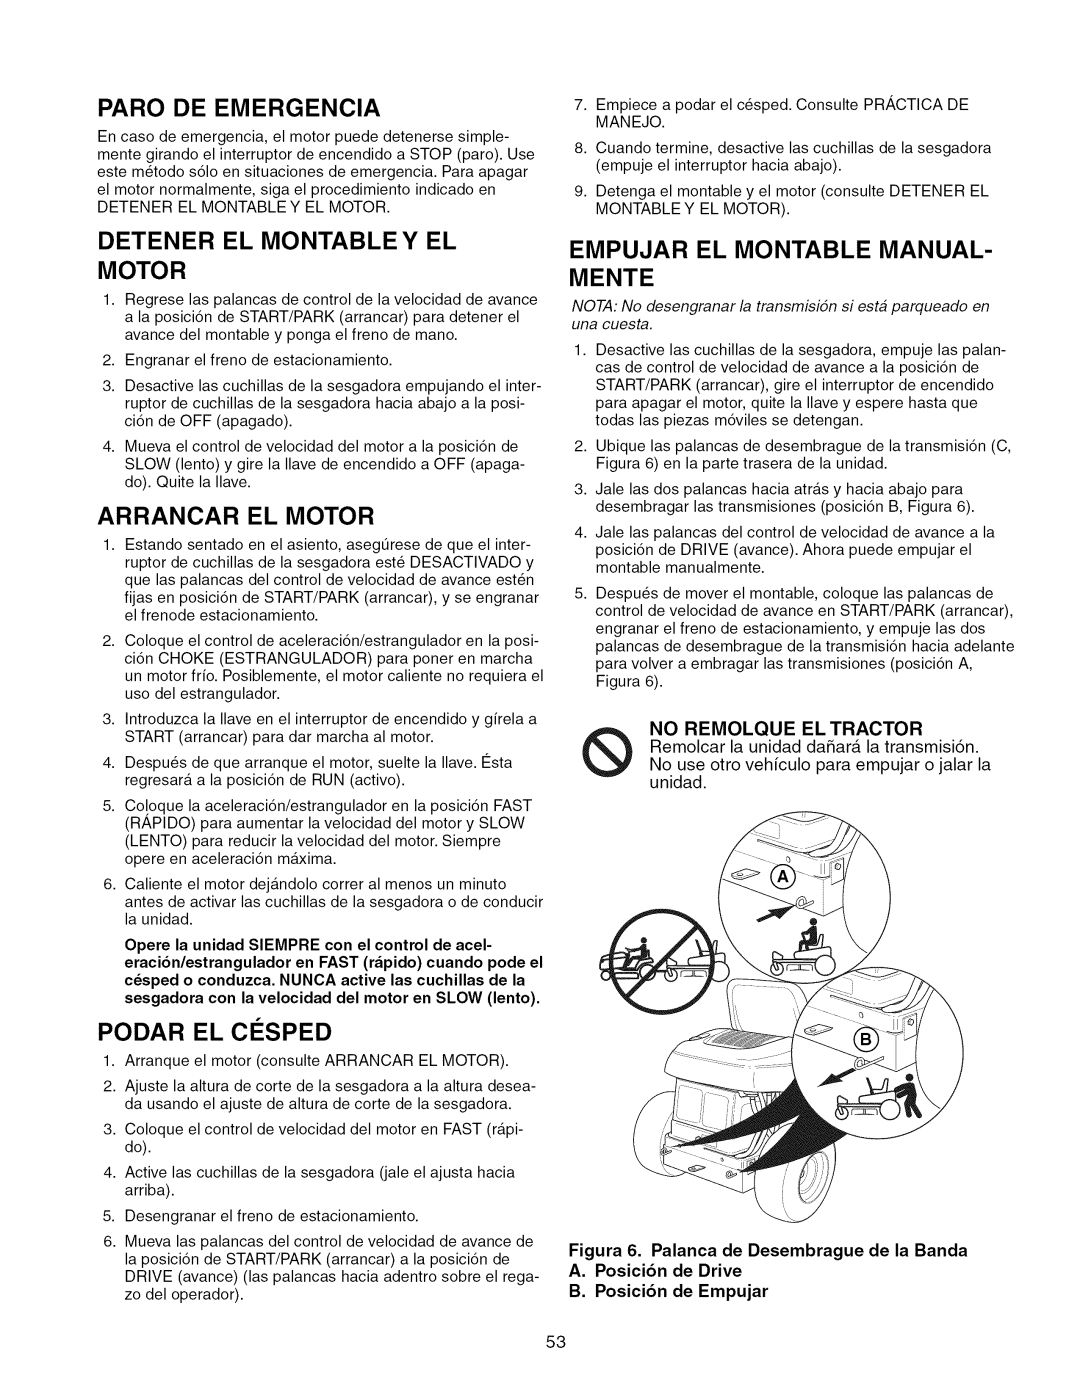 Craftsman 28986, ZTS 6000 manual Paro De Emergencia, Detener El Montable Y El Motor, Arrancar El Motor, Podar El C¢:Sped 